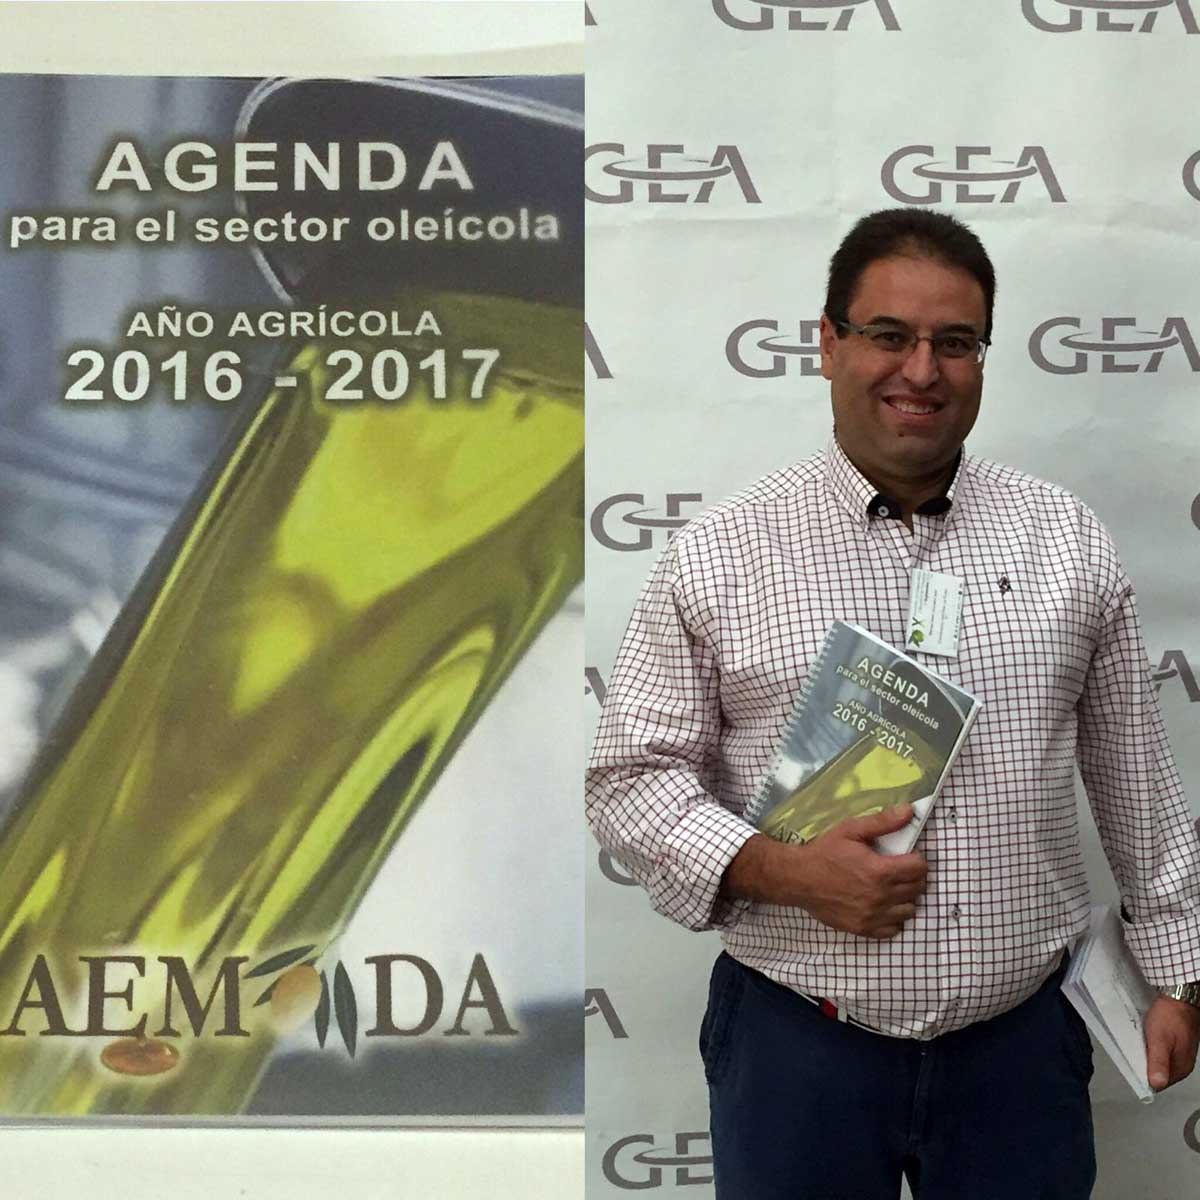 El presidente de AEMODA, Manuel Caravoca, con la nueva Agenga para el sector olecola 2016-2017